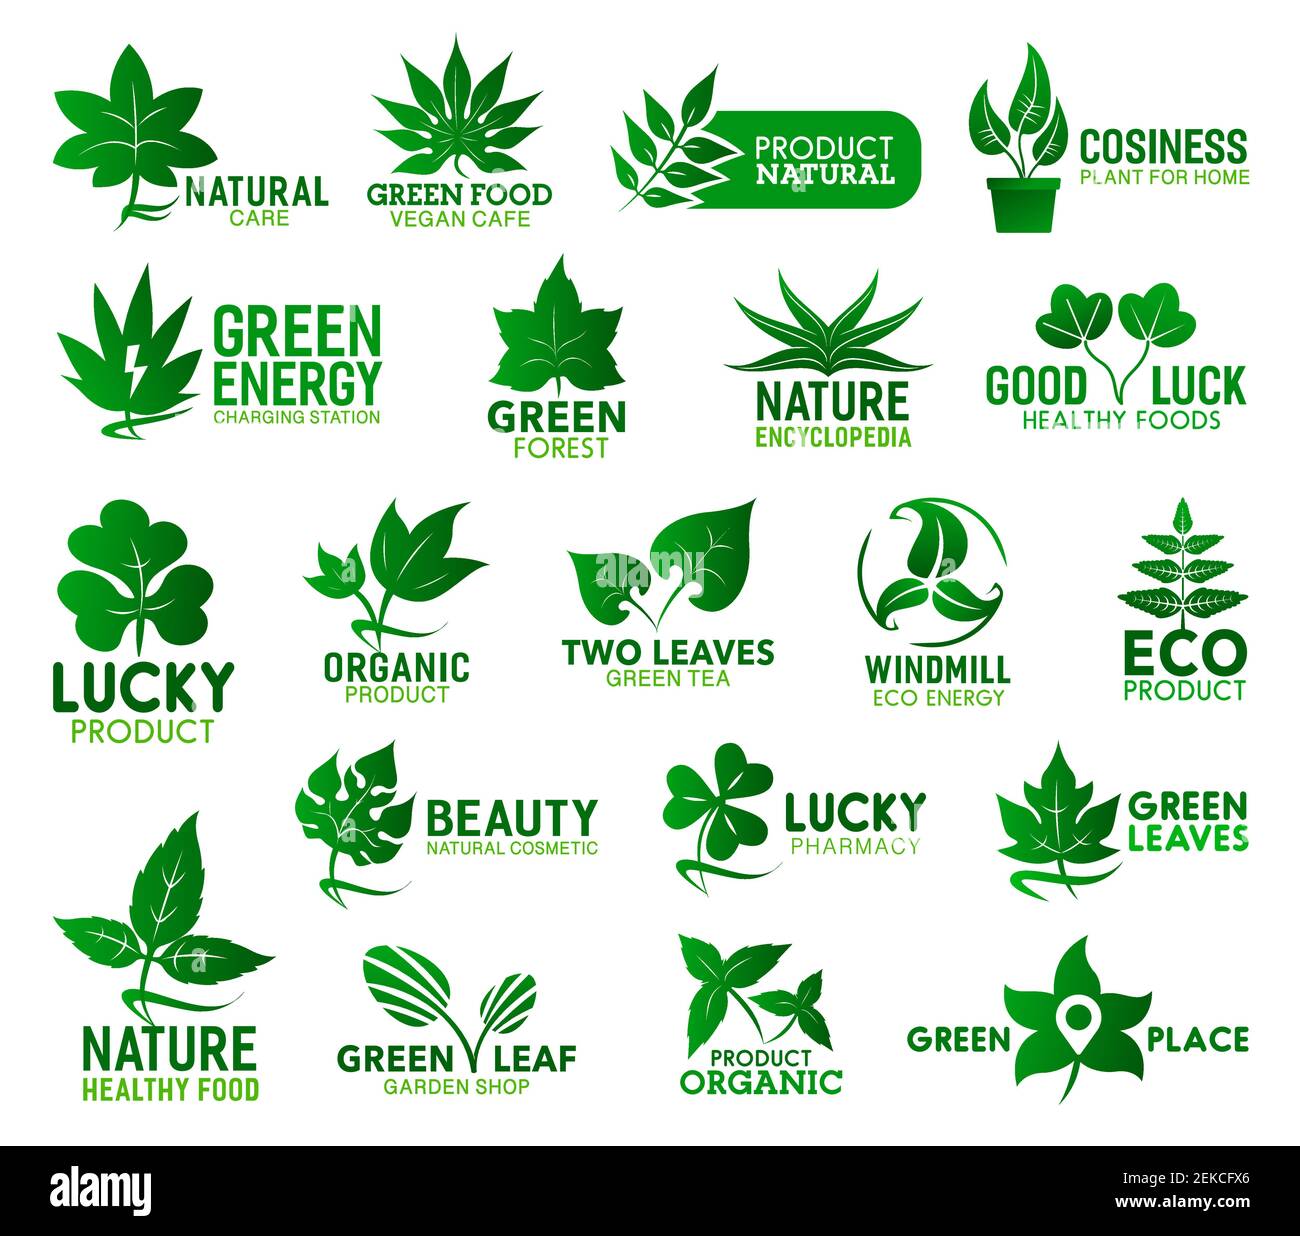 Icone vettoriali a foglia verde di ecologia, natura, salute e prodotti biologici. Foglie fresche di piante ecologiche e biologiche, rami di alberi e germogli di fiori di betulla Illustrazione Vettoriale